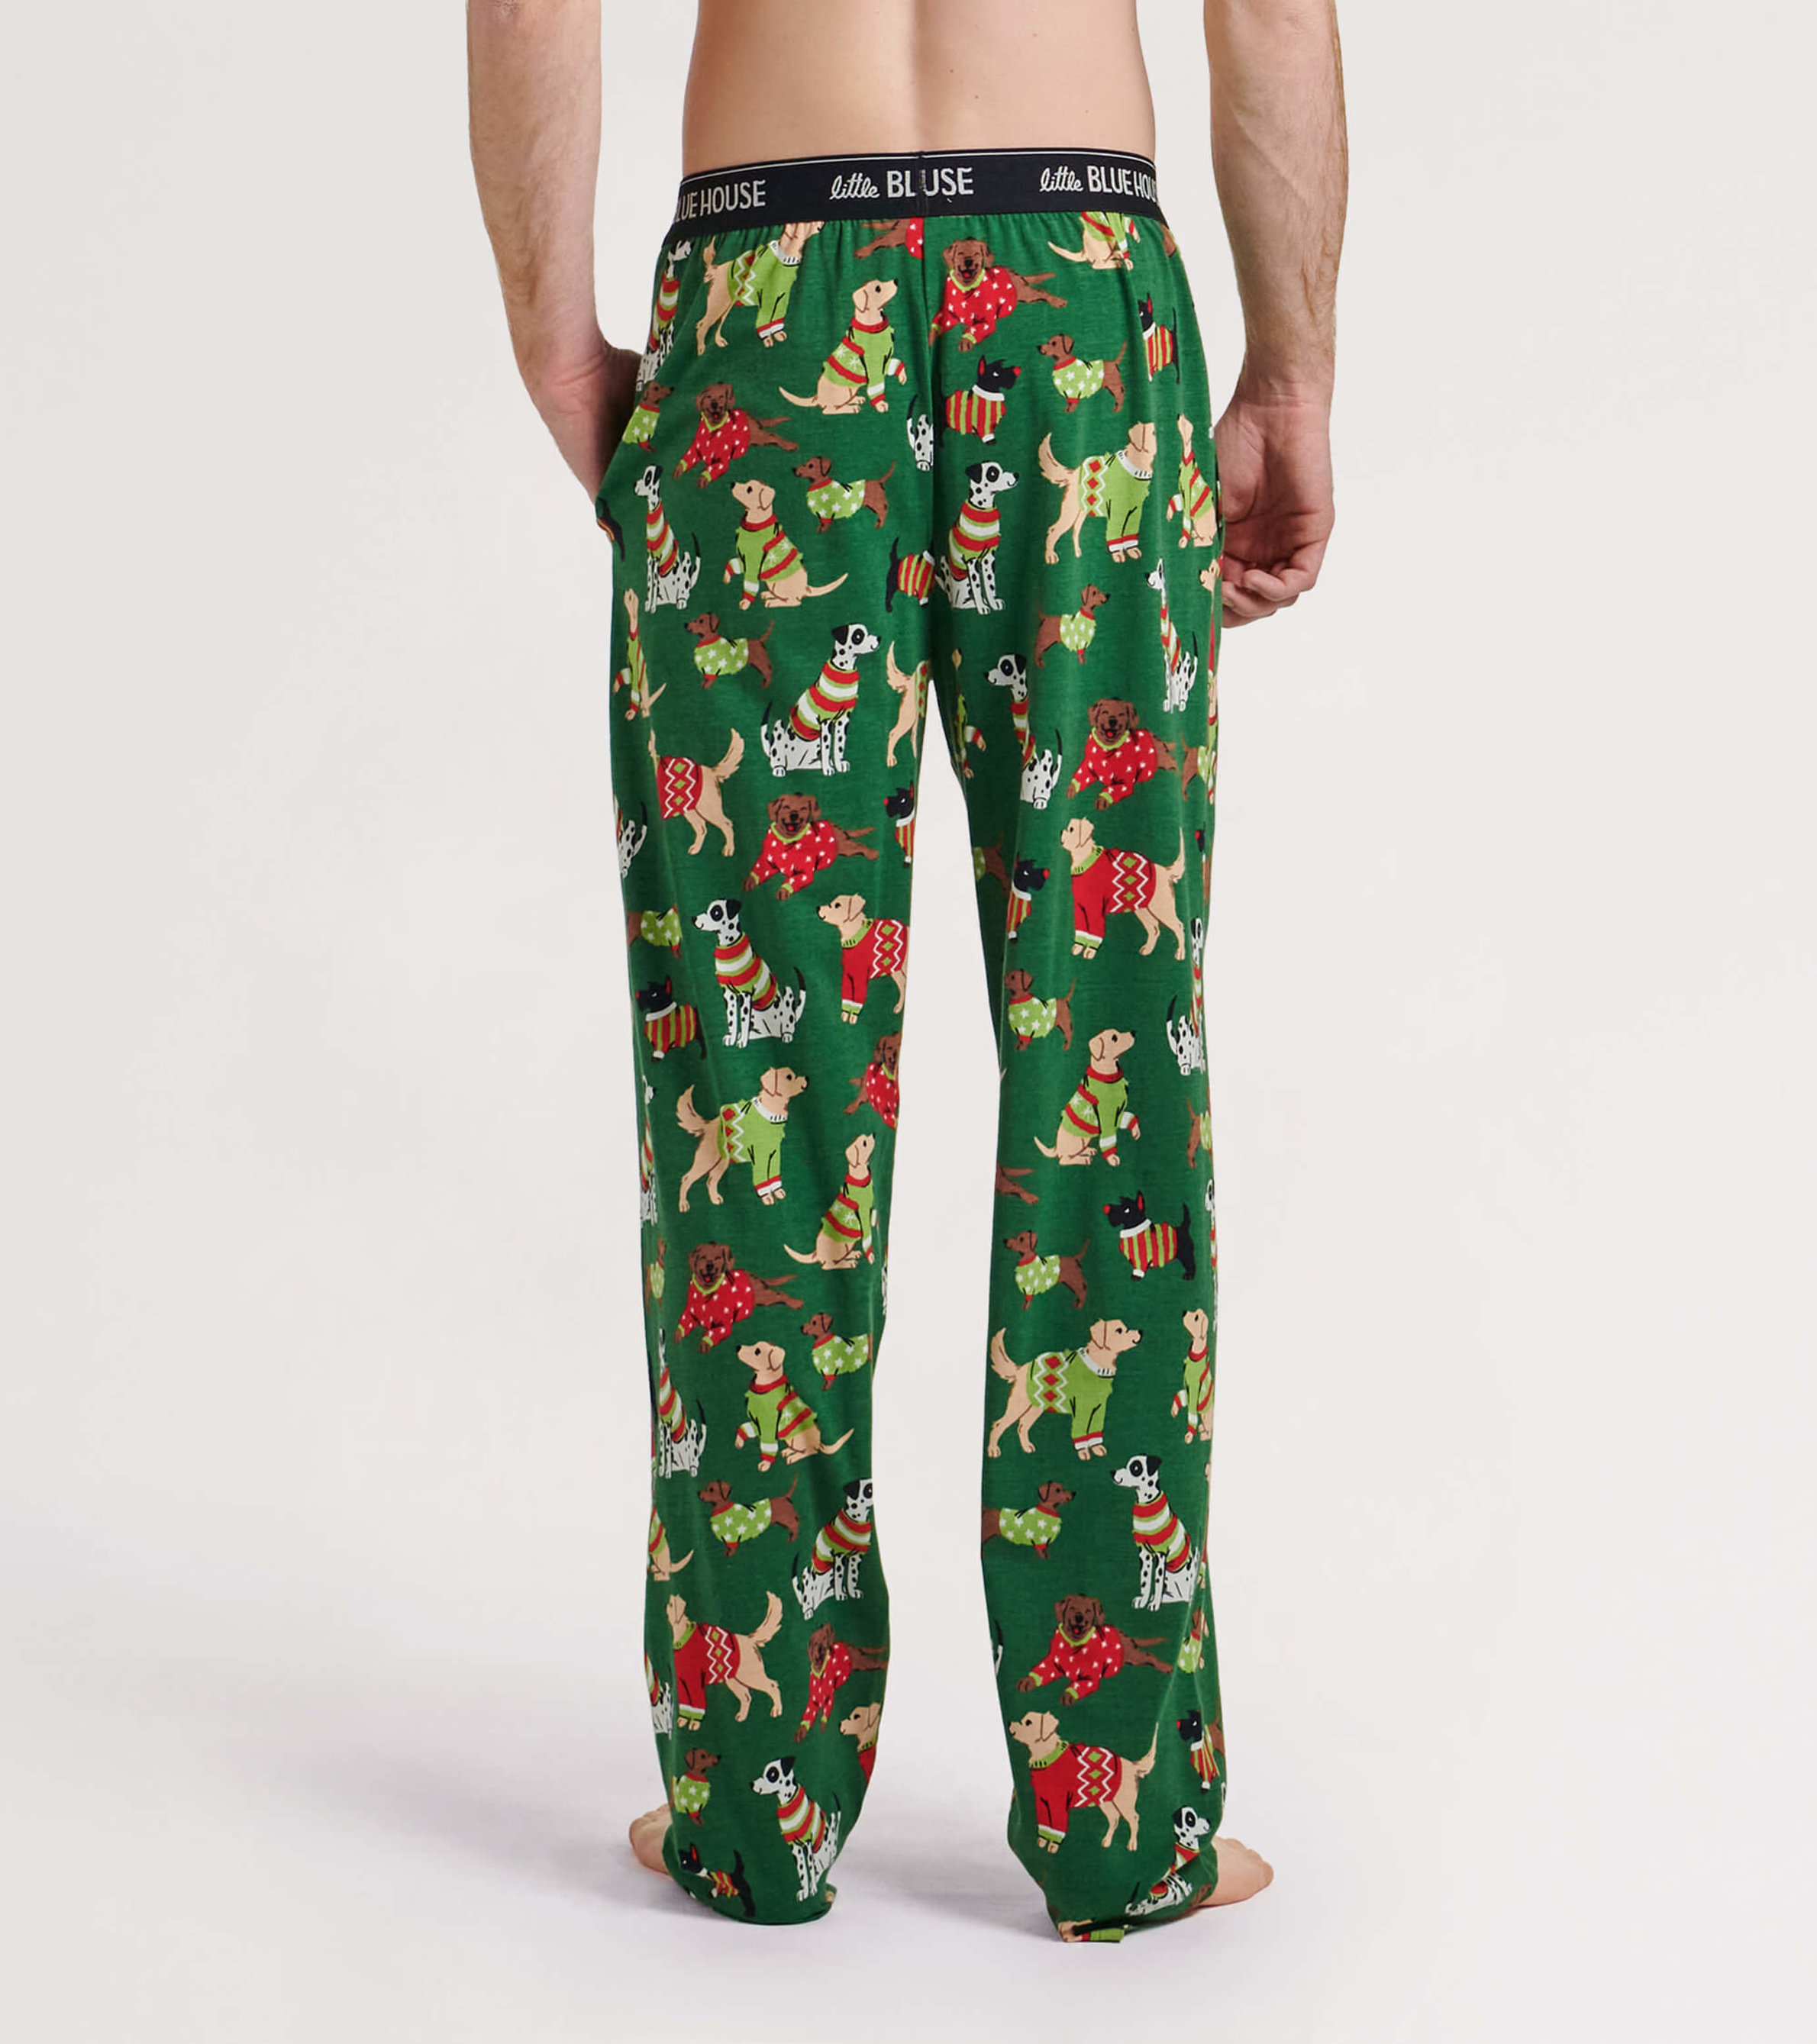 Family Christmas Pajama Pants,adult Christmas Pajamas Pants and